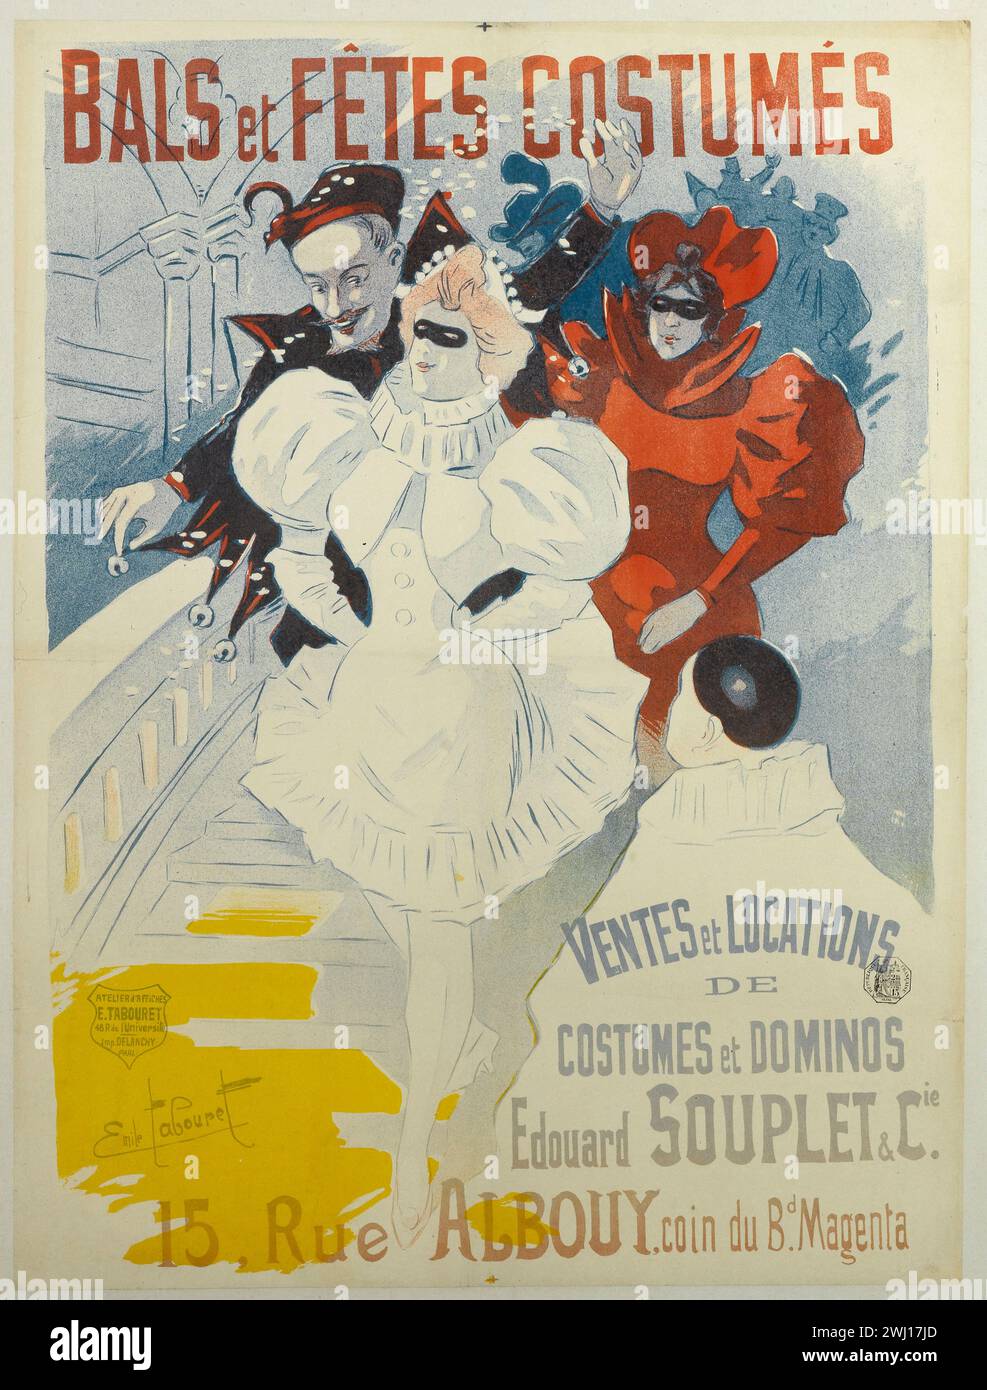 Affiche française vintage publicité vente et location de costumes pour bals et fêtes signés Emile tabret. circa 1900 Banque D'Images